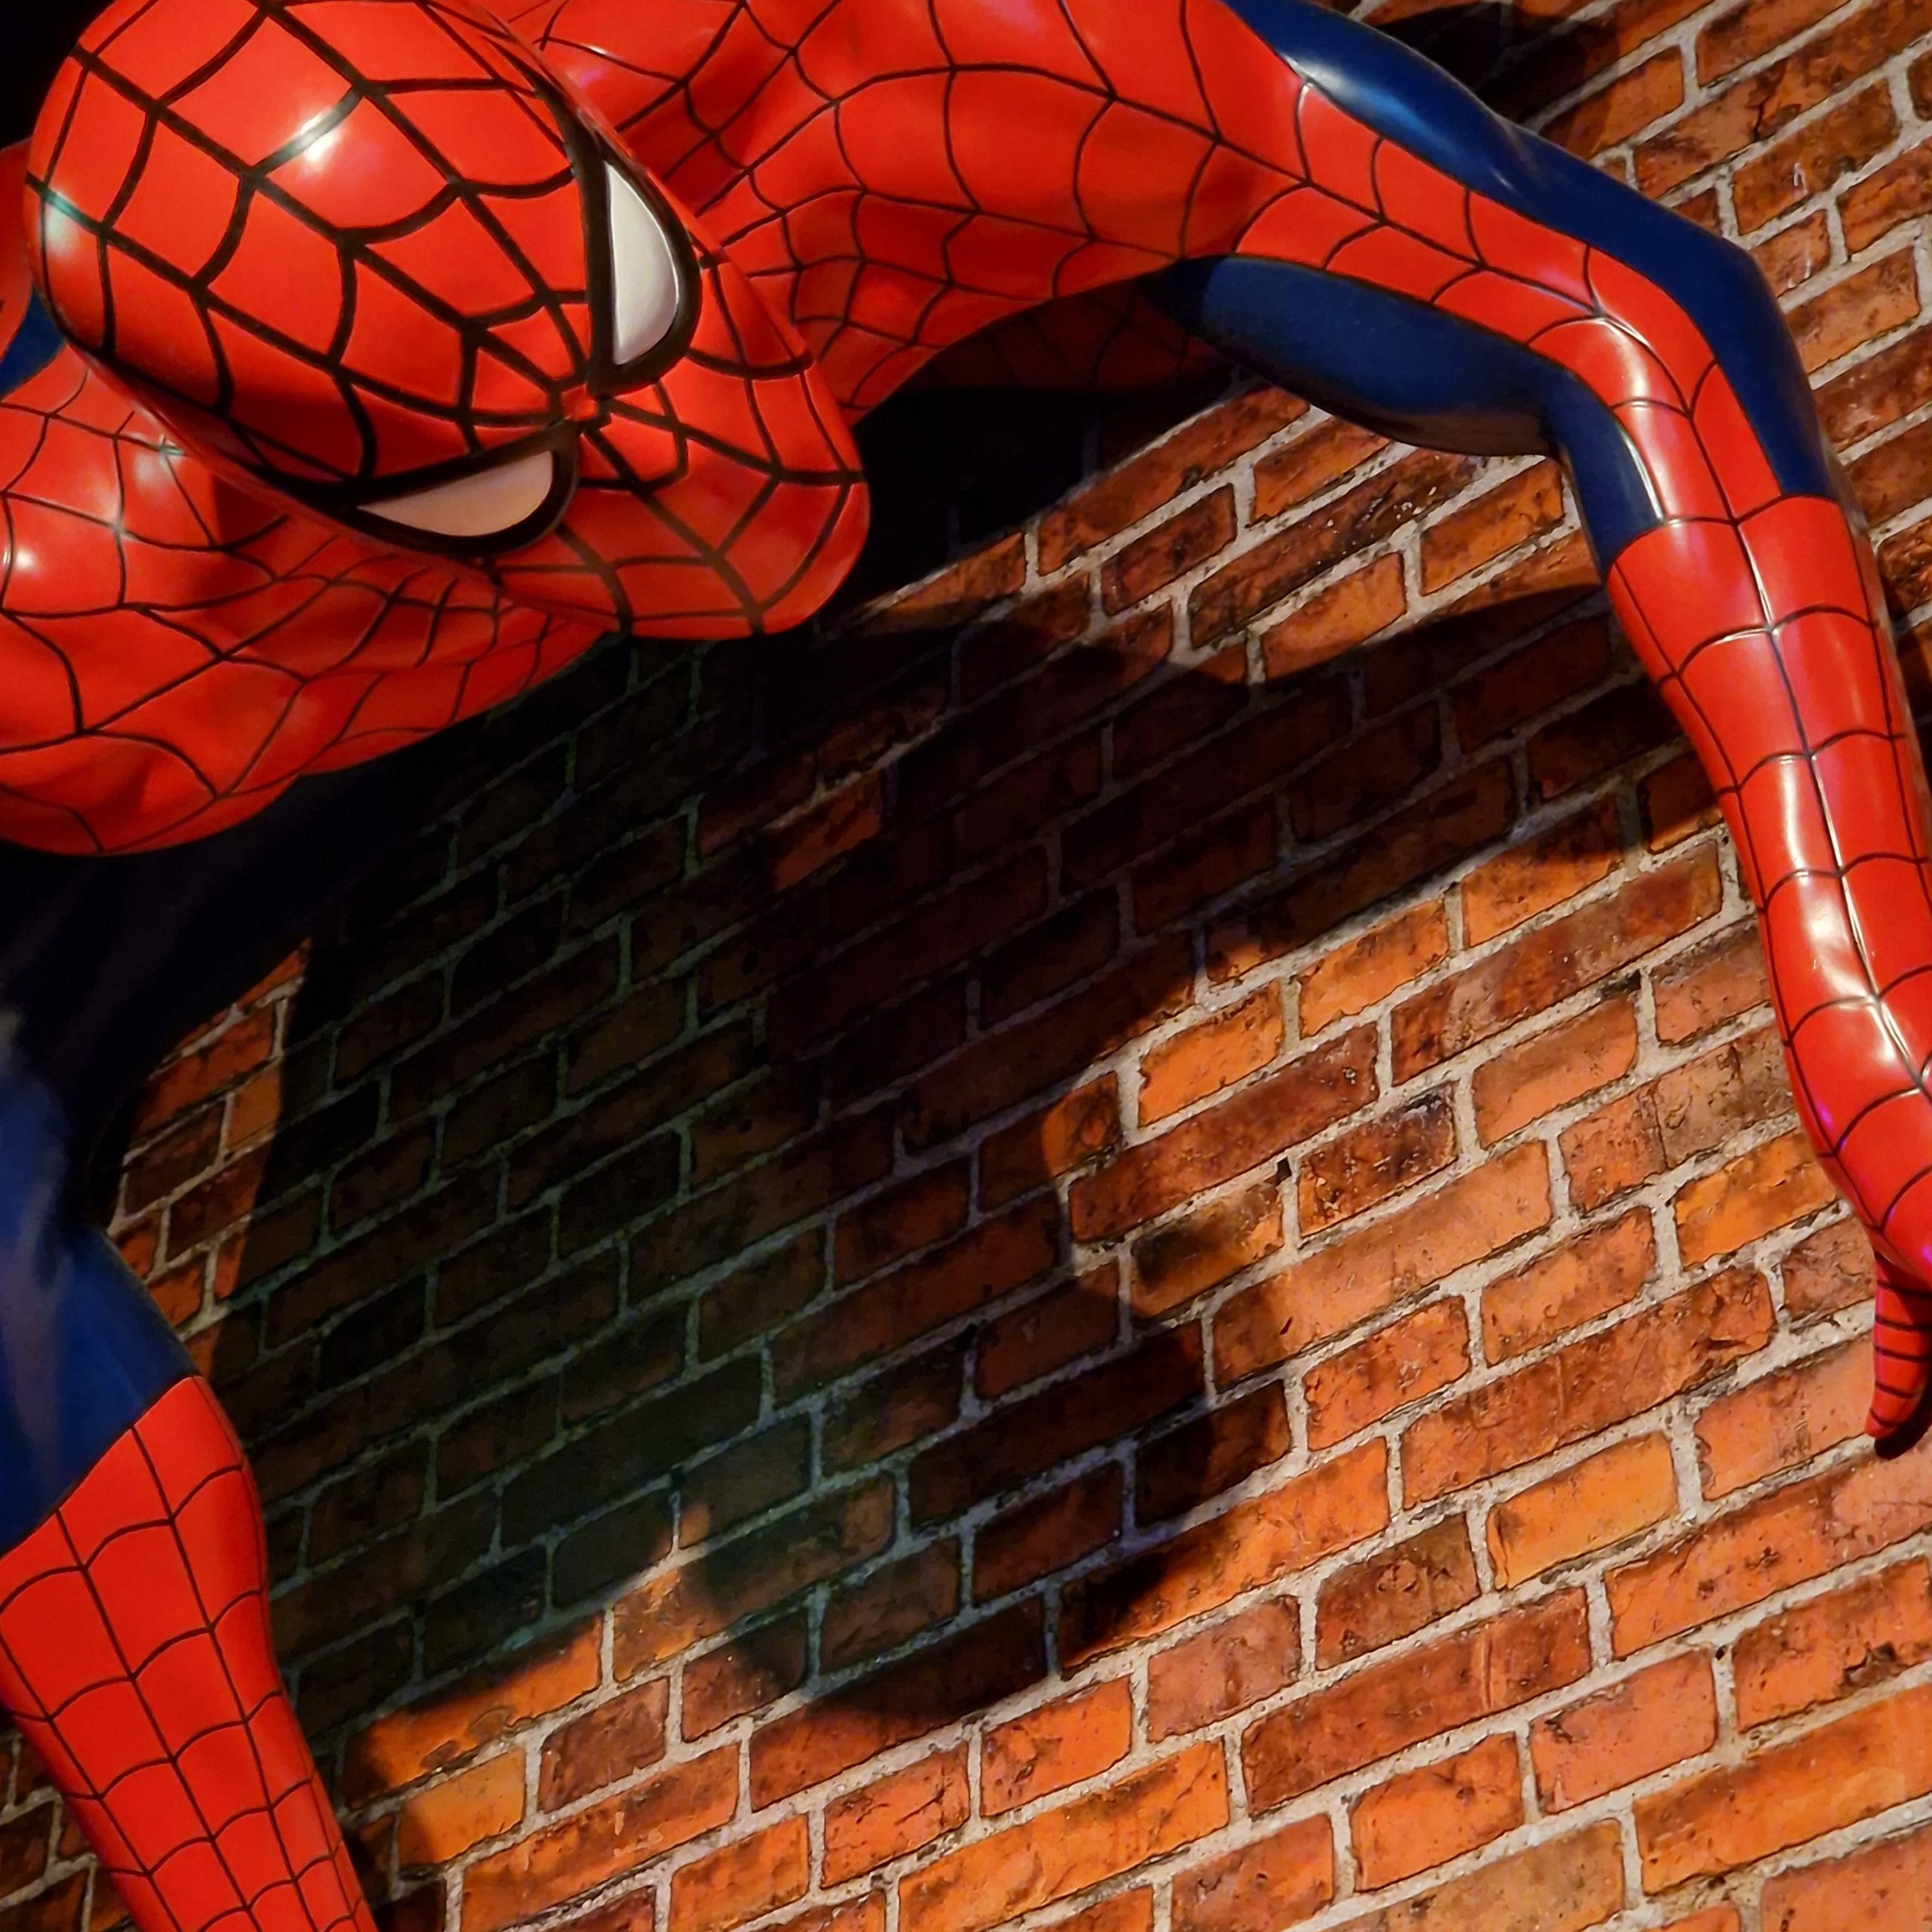 Spider-Man (Madame Tussauds abril de 2022)